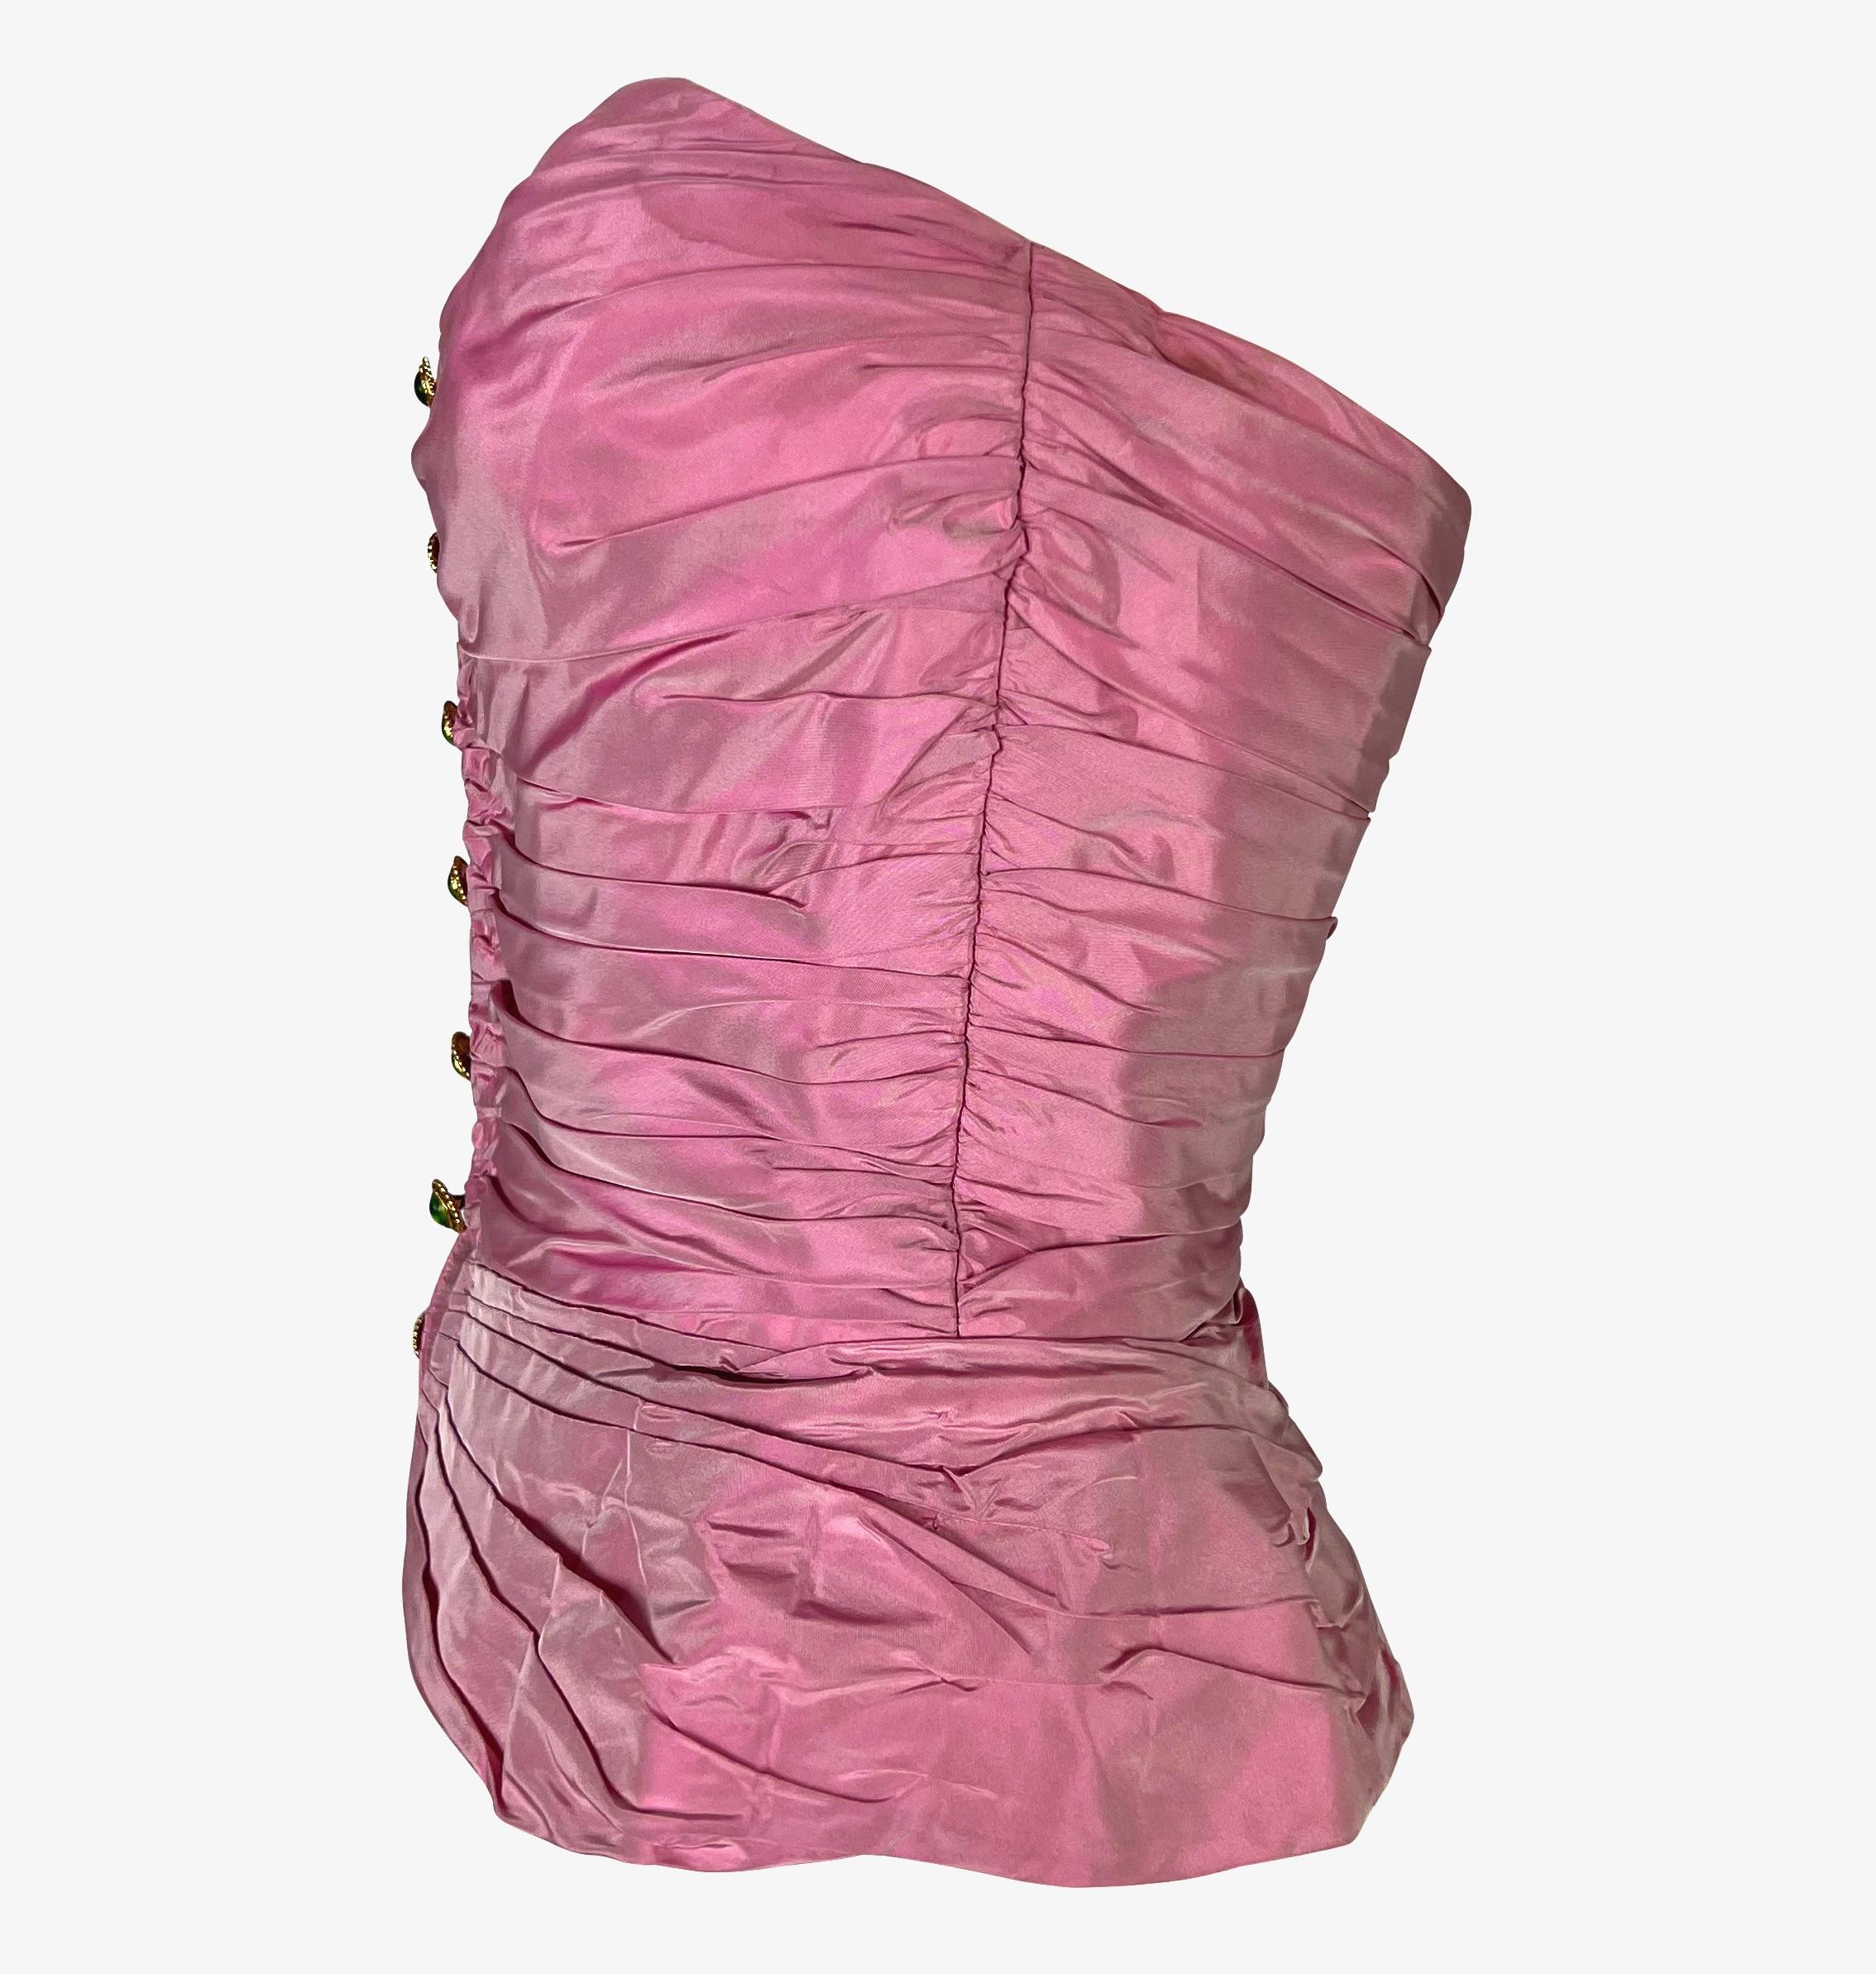 1980s corset